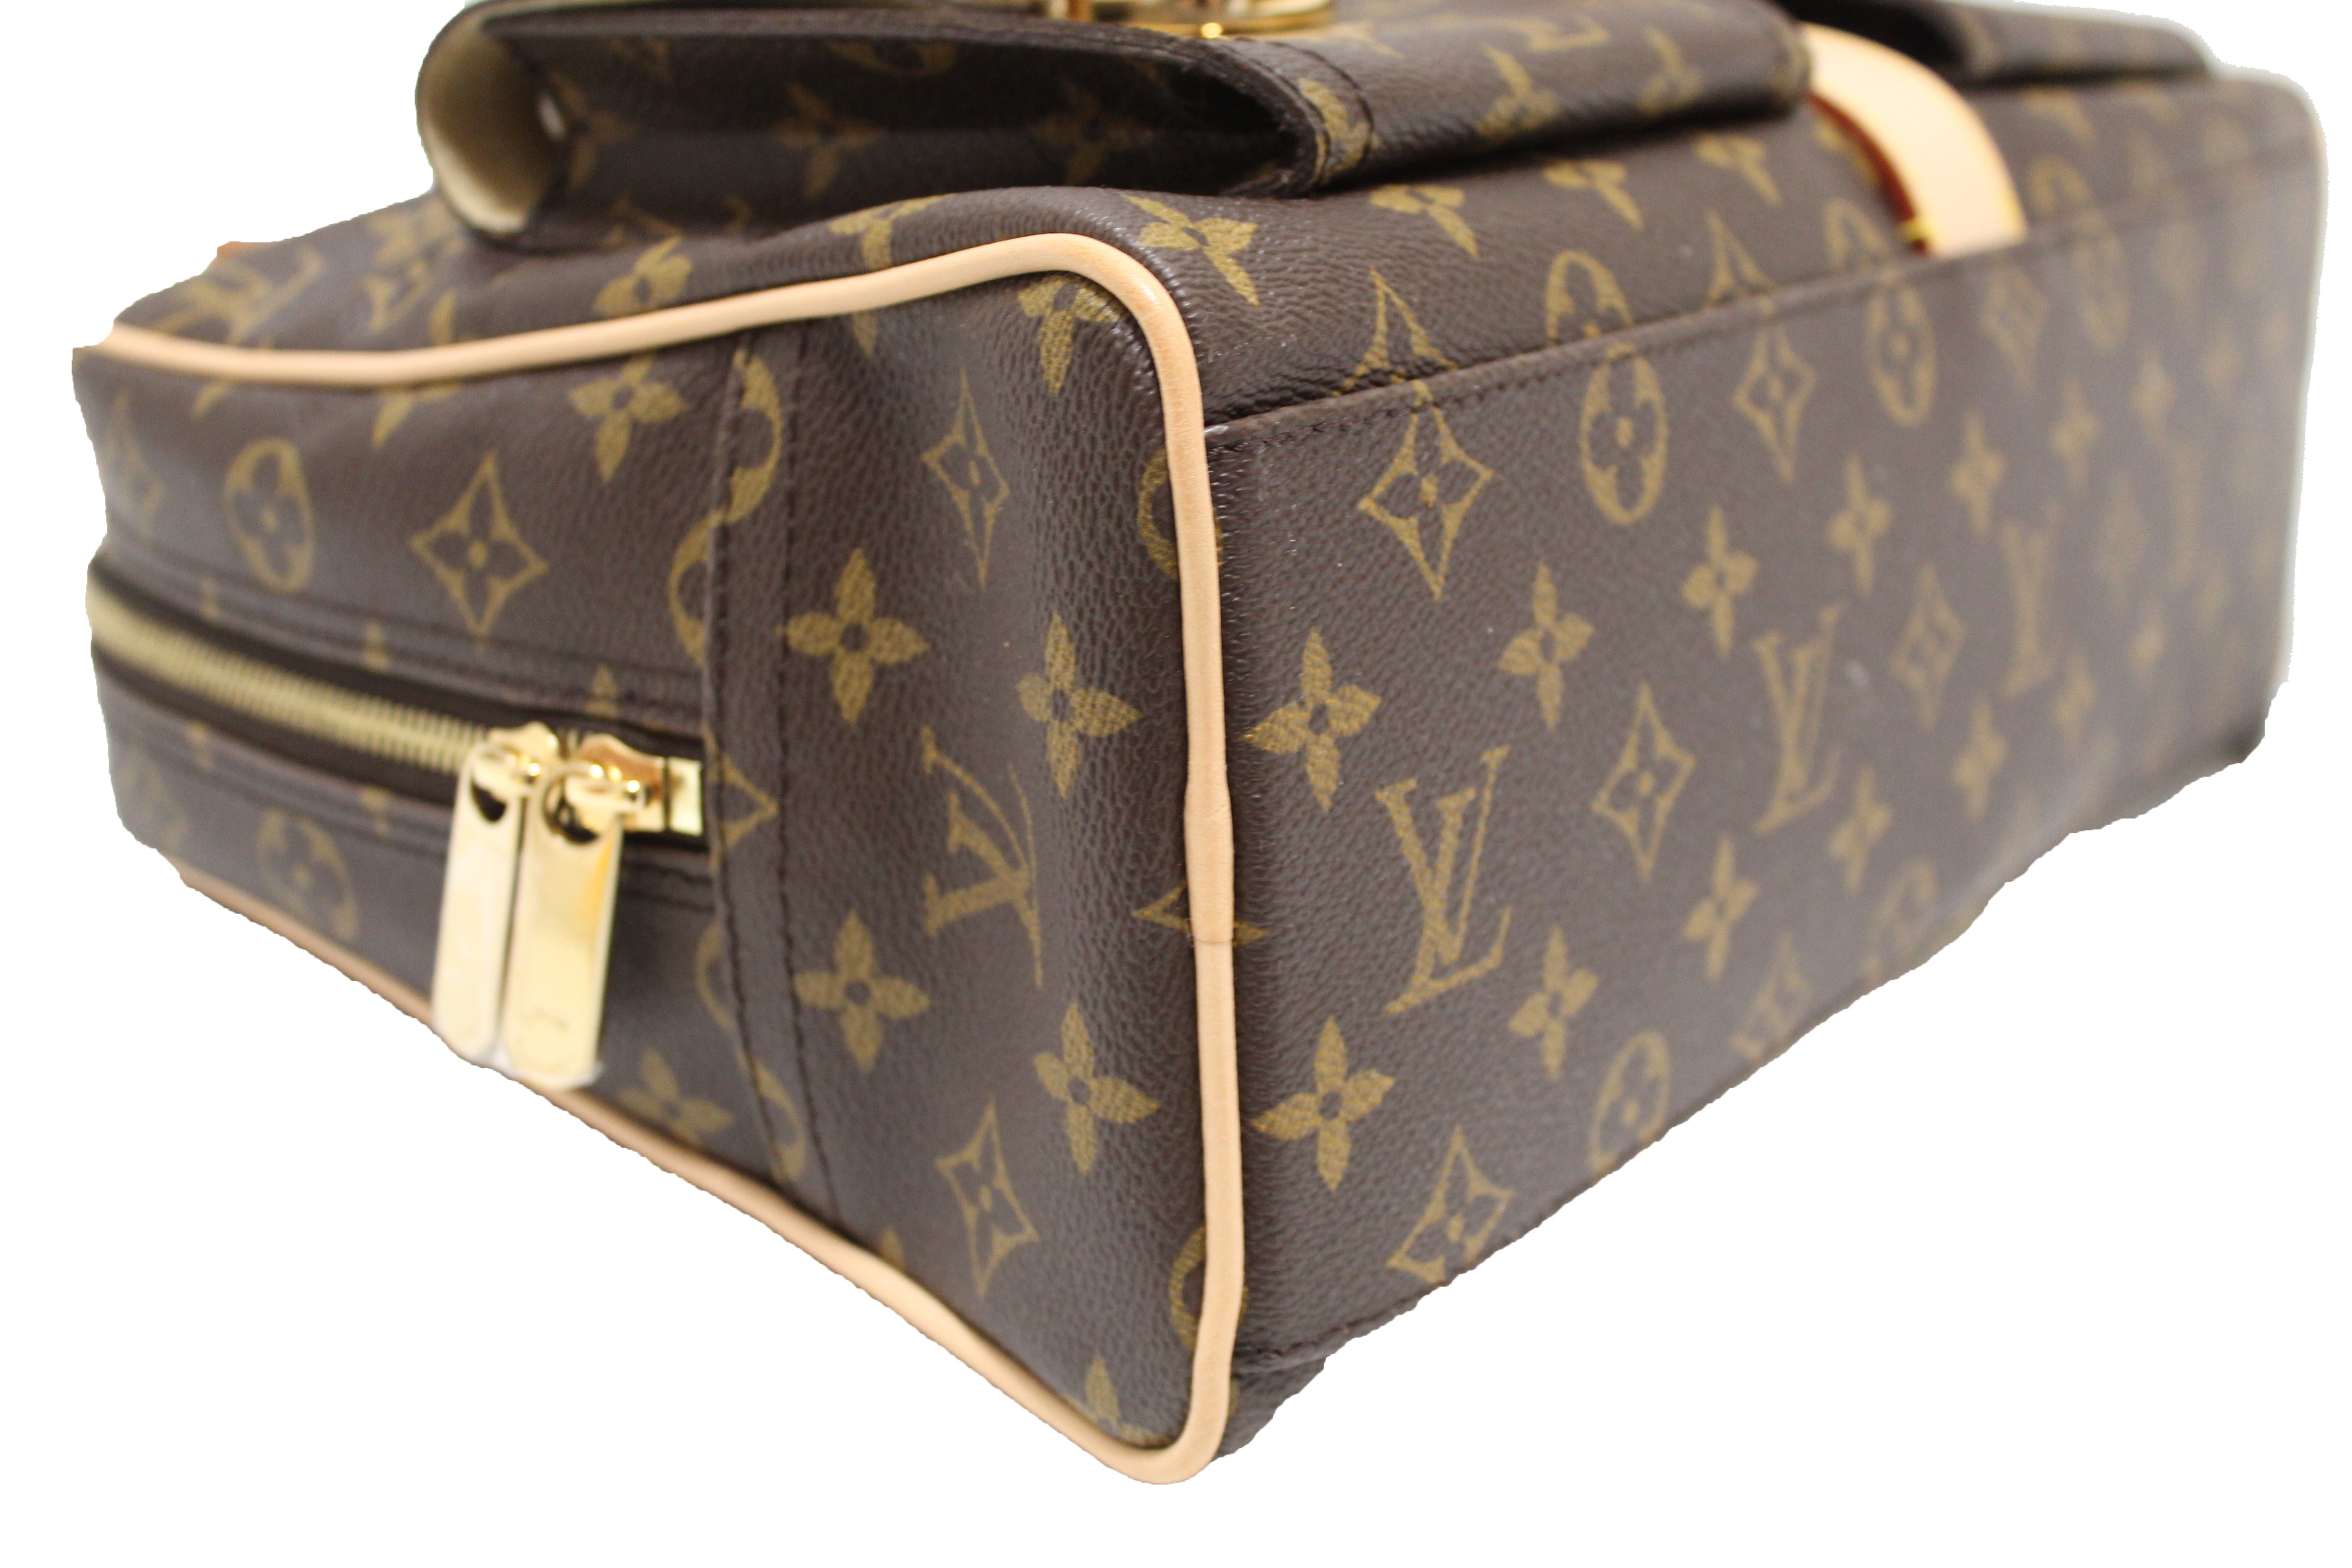 Authentic NEW Louis Vuitton Classic Monogram Manhattan GM Handbag